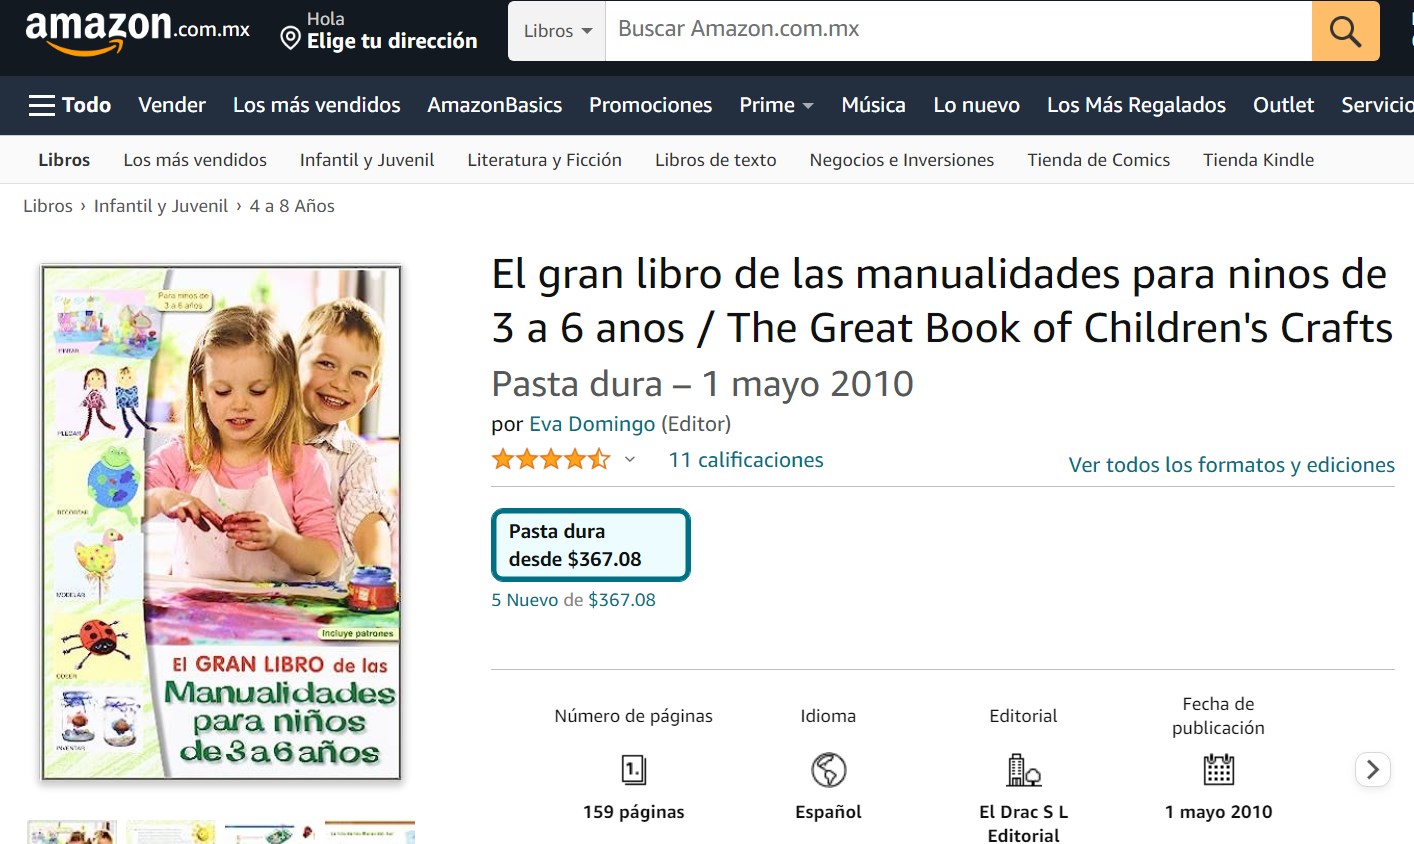 Libro: El gran libro de las manualidades para niños de 3 a 6 años por Eva Domingo